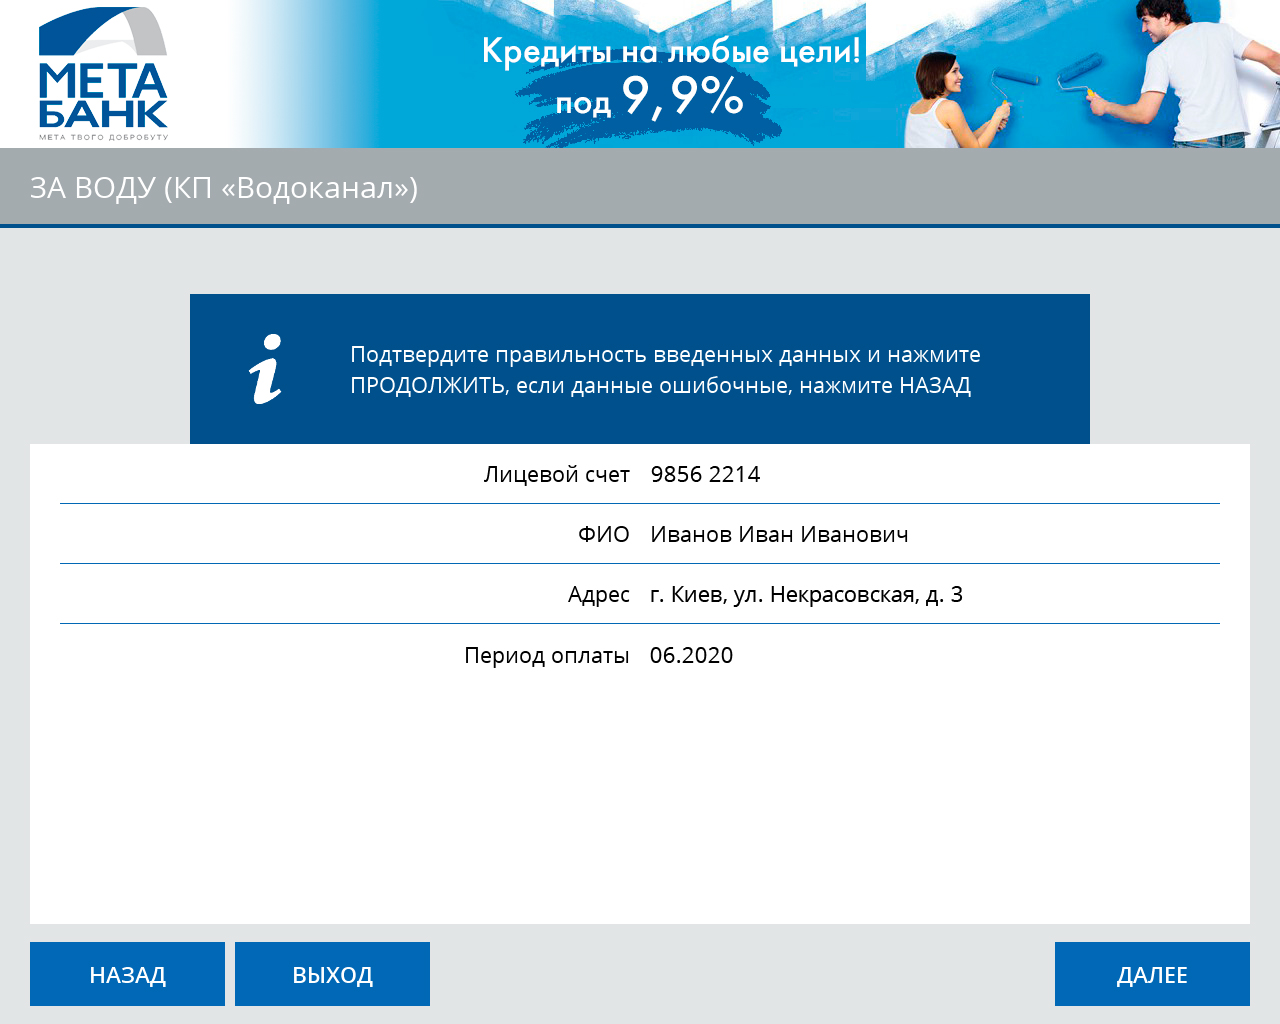 МетаБанк (Украина) автоматизирует прием платежей через сеть терминалов - рис.3